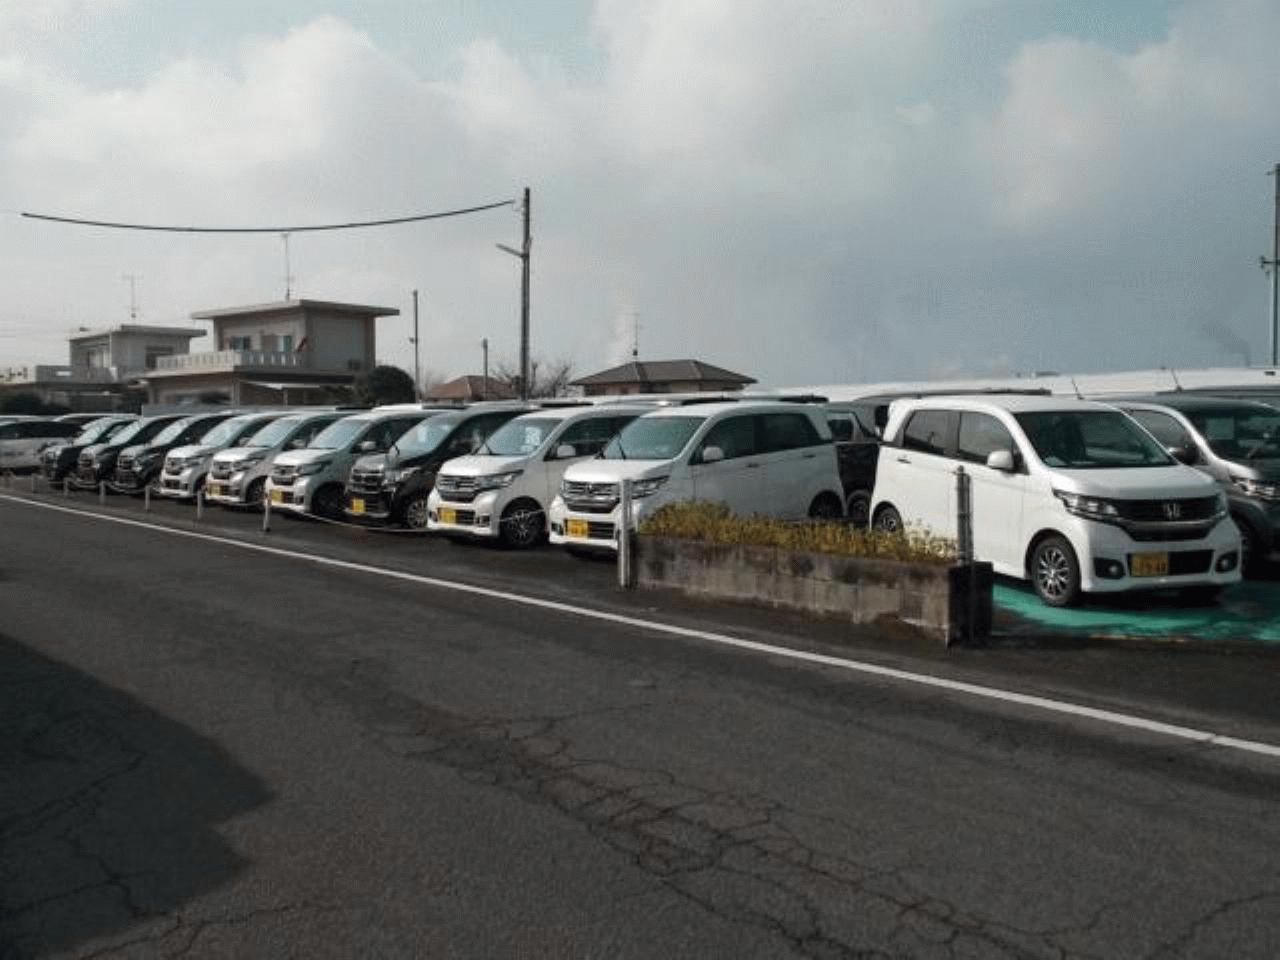 Honda Cars 四国中央 川之江店/三島